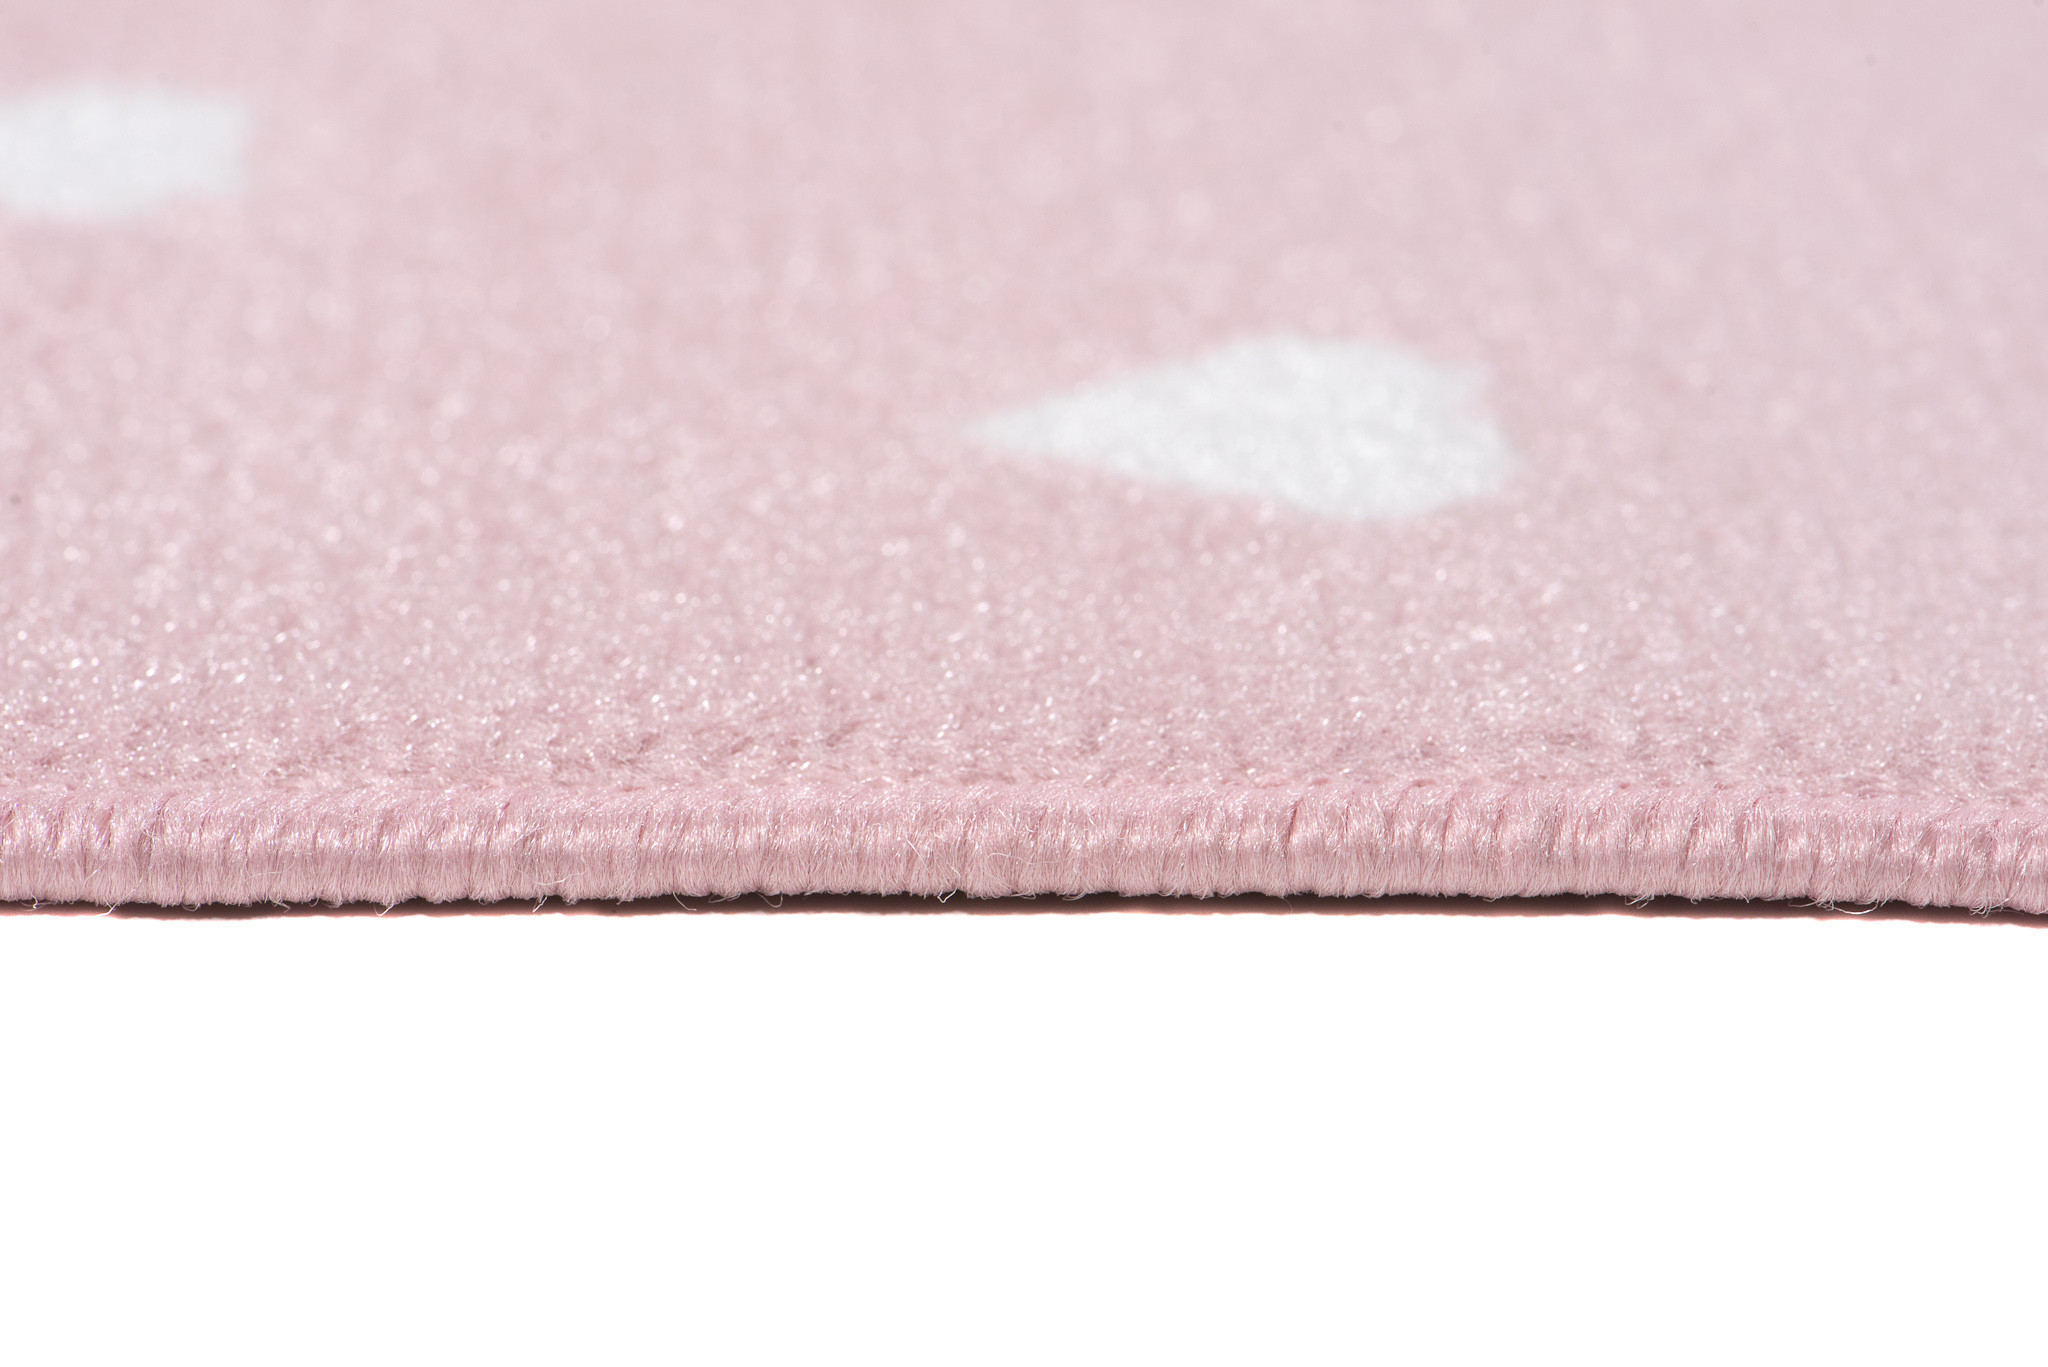 Dětský koberec PINKY DE90A Cat růžový